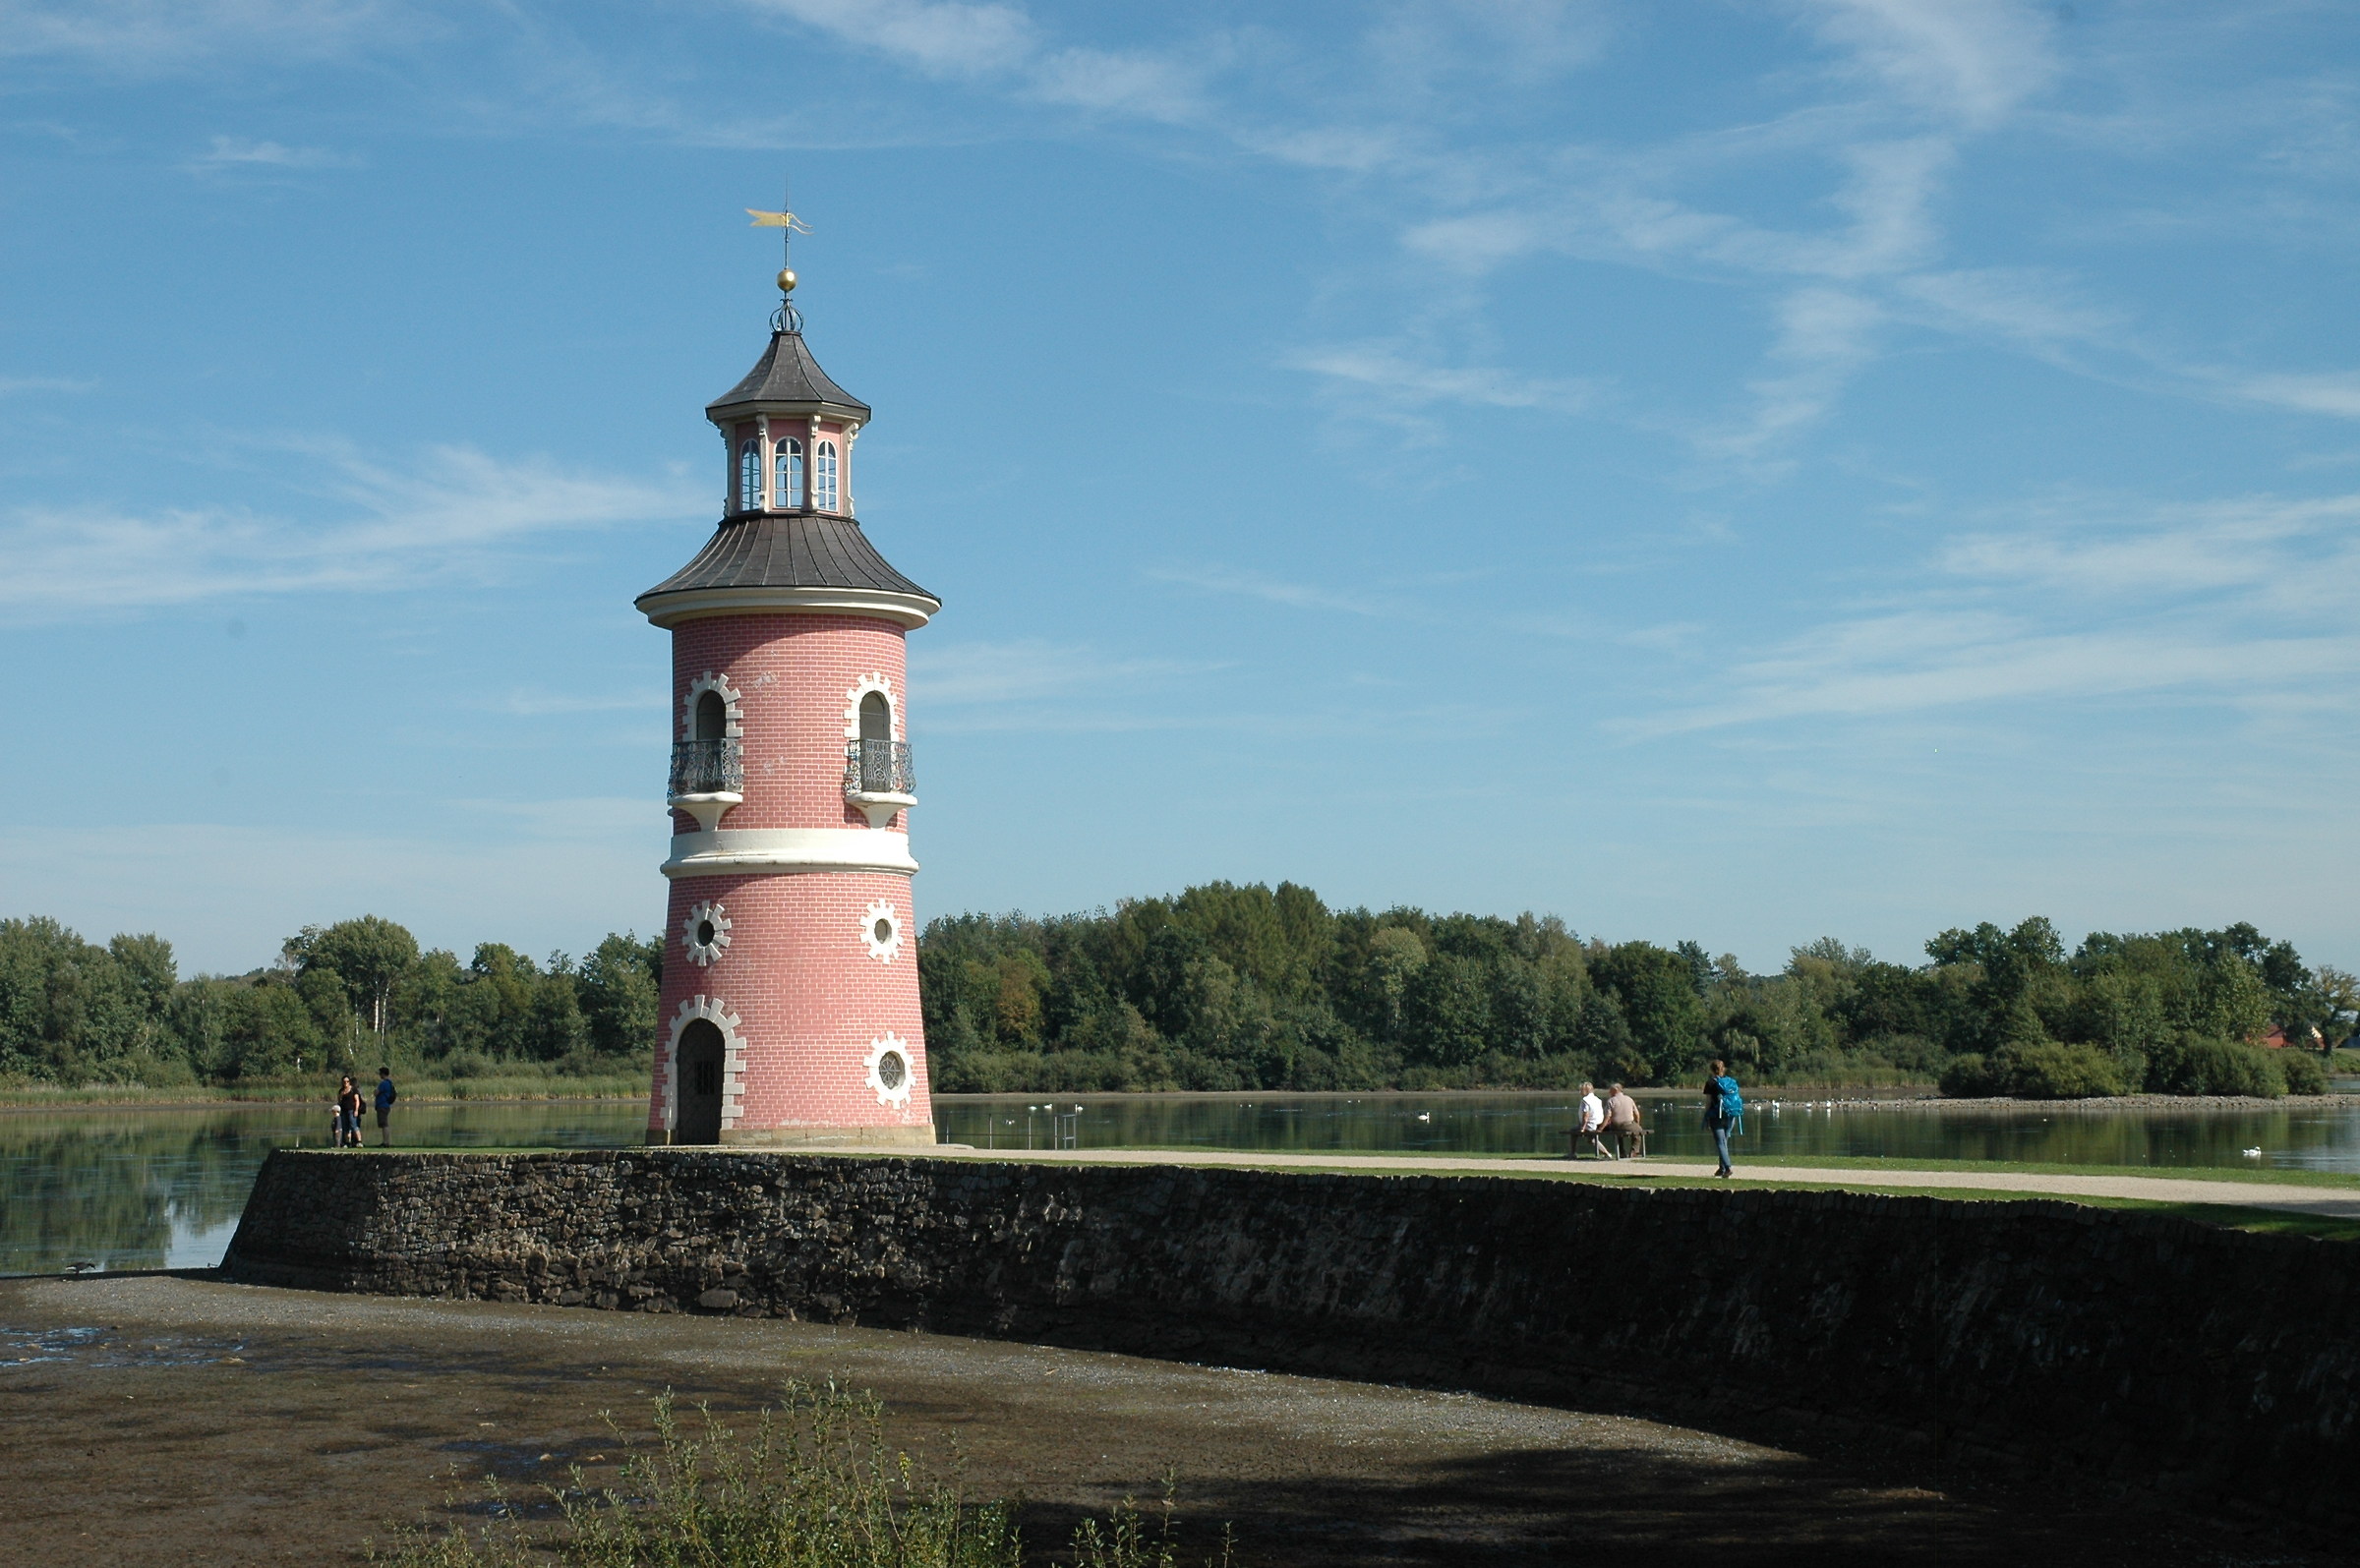 Lighthouse in Moritzburg...